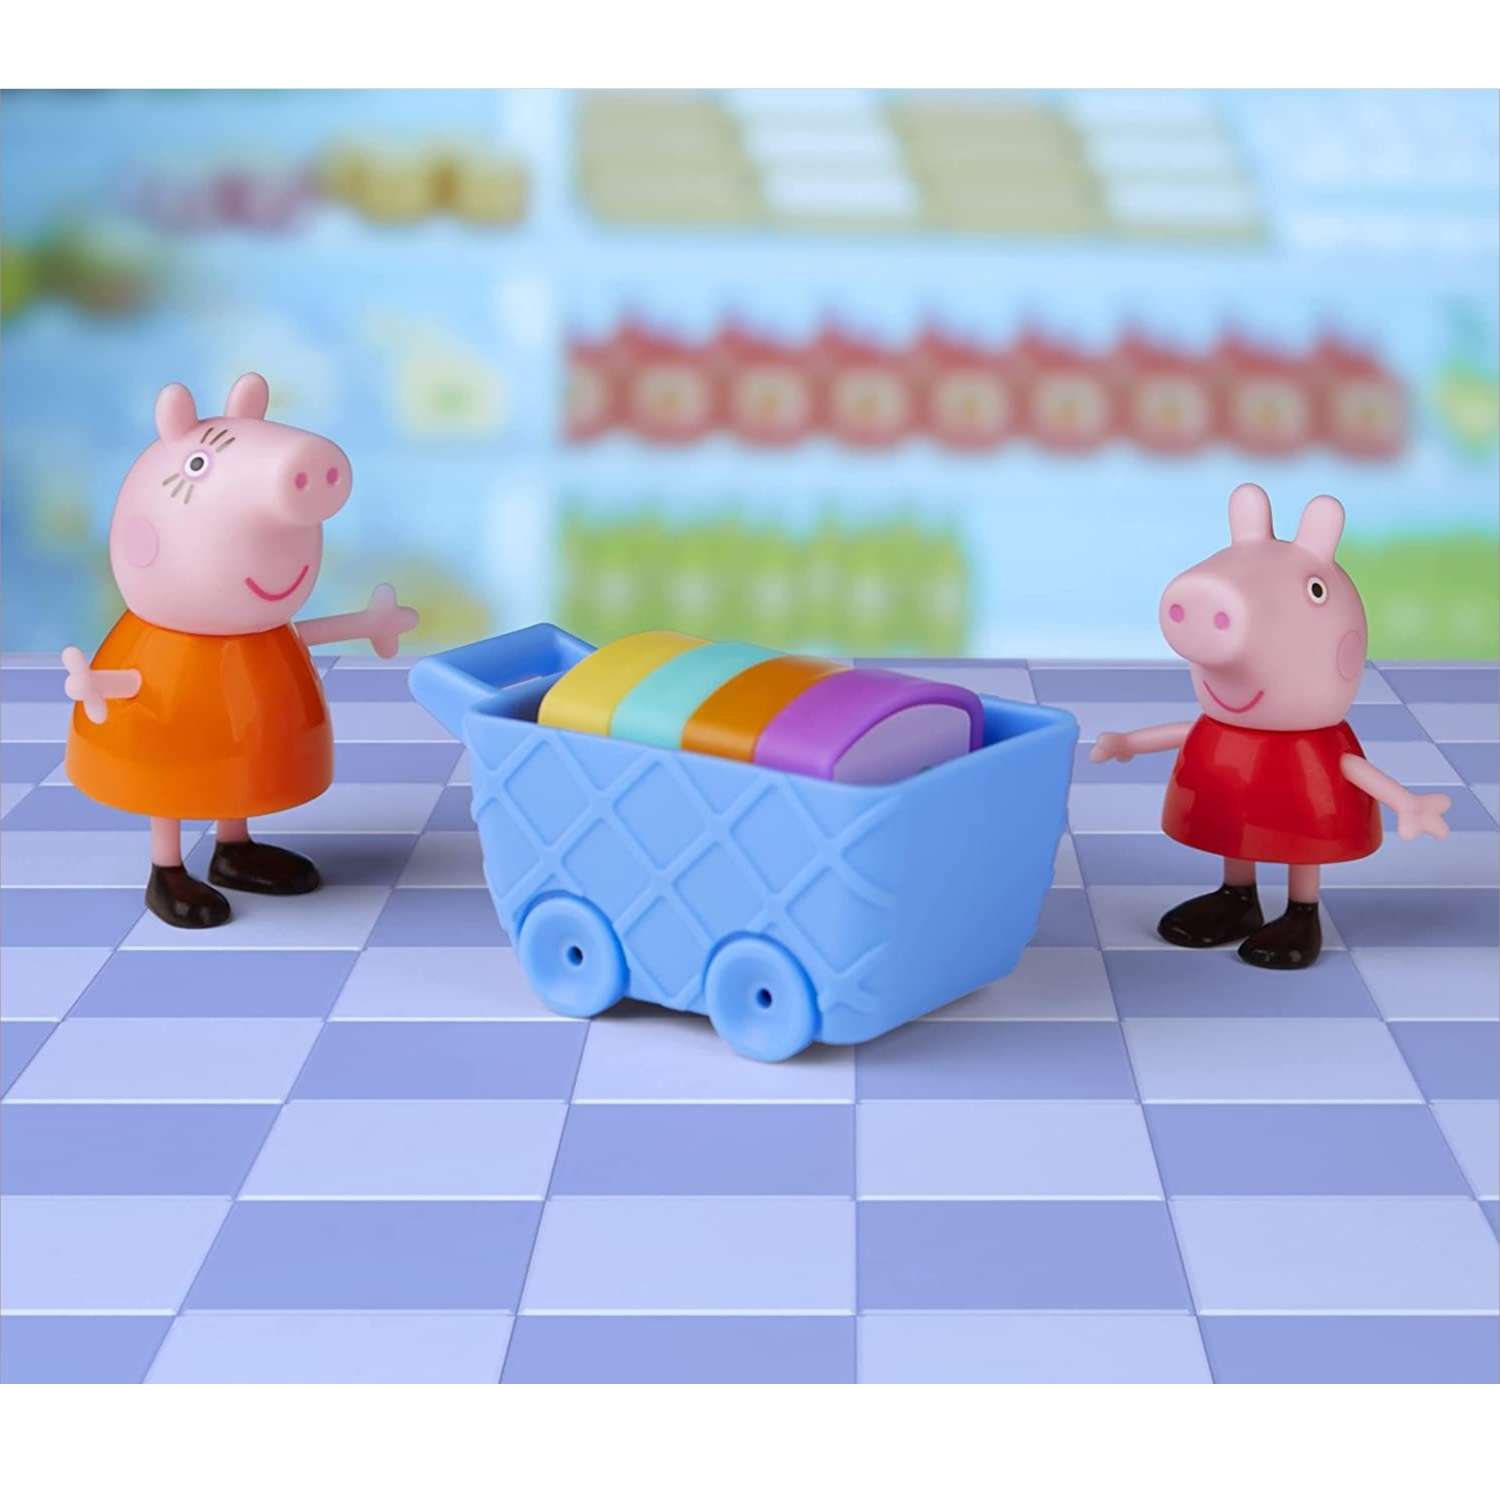 Набор игровой Peppa Pig Свинка Пеппа в магазине F44105X0 Свинка Пеппа - фото 3